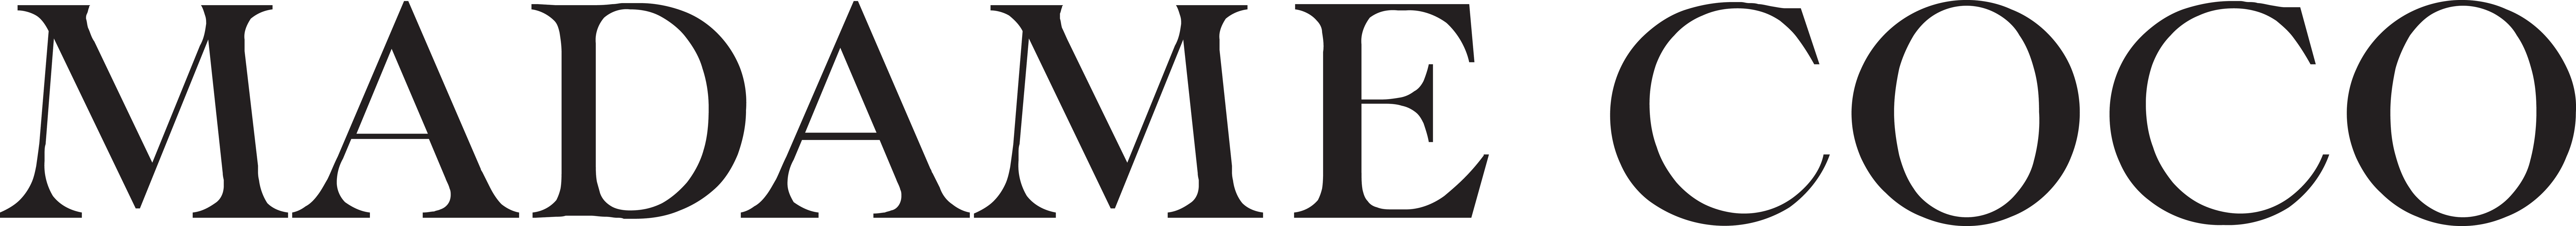 Madame Coco-Logo